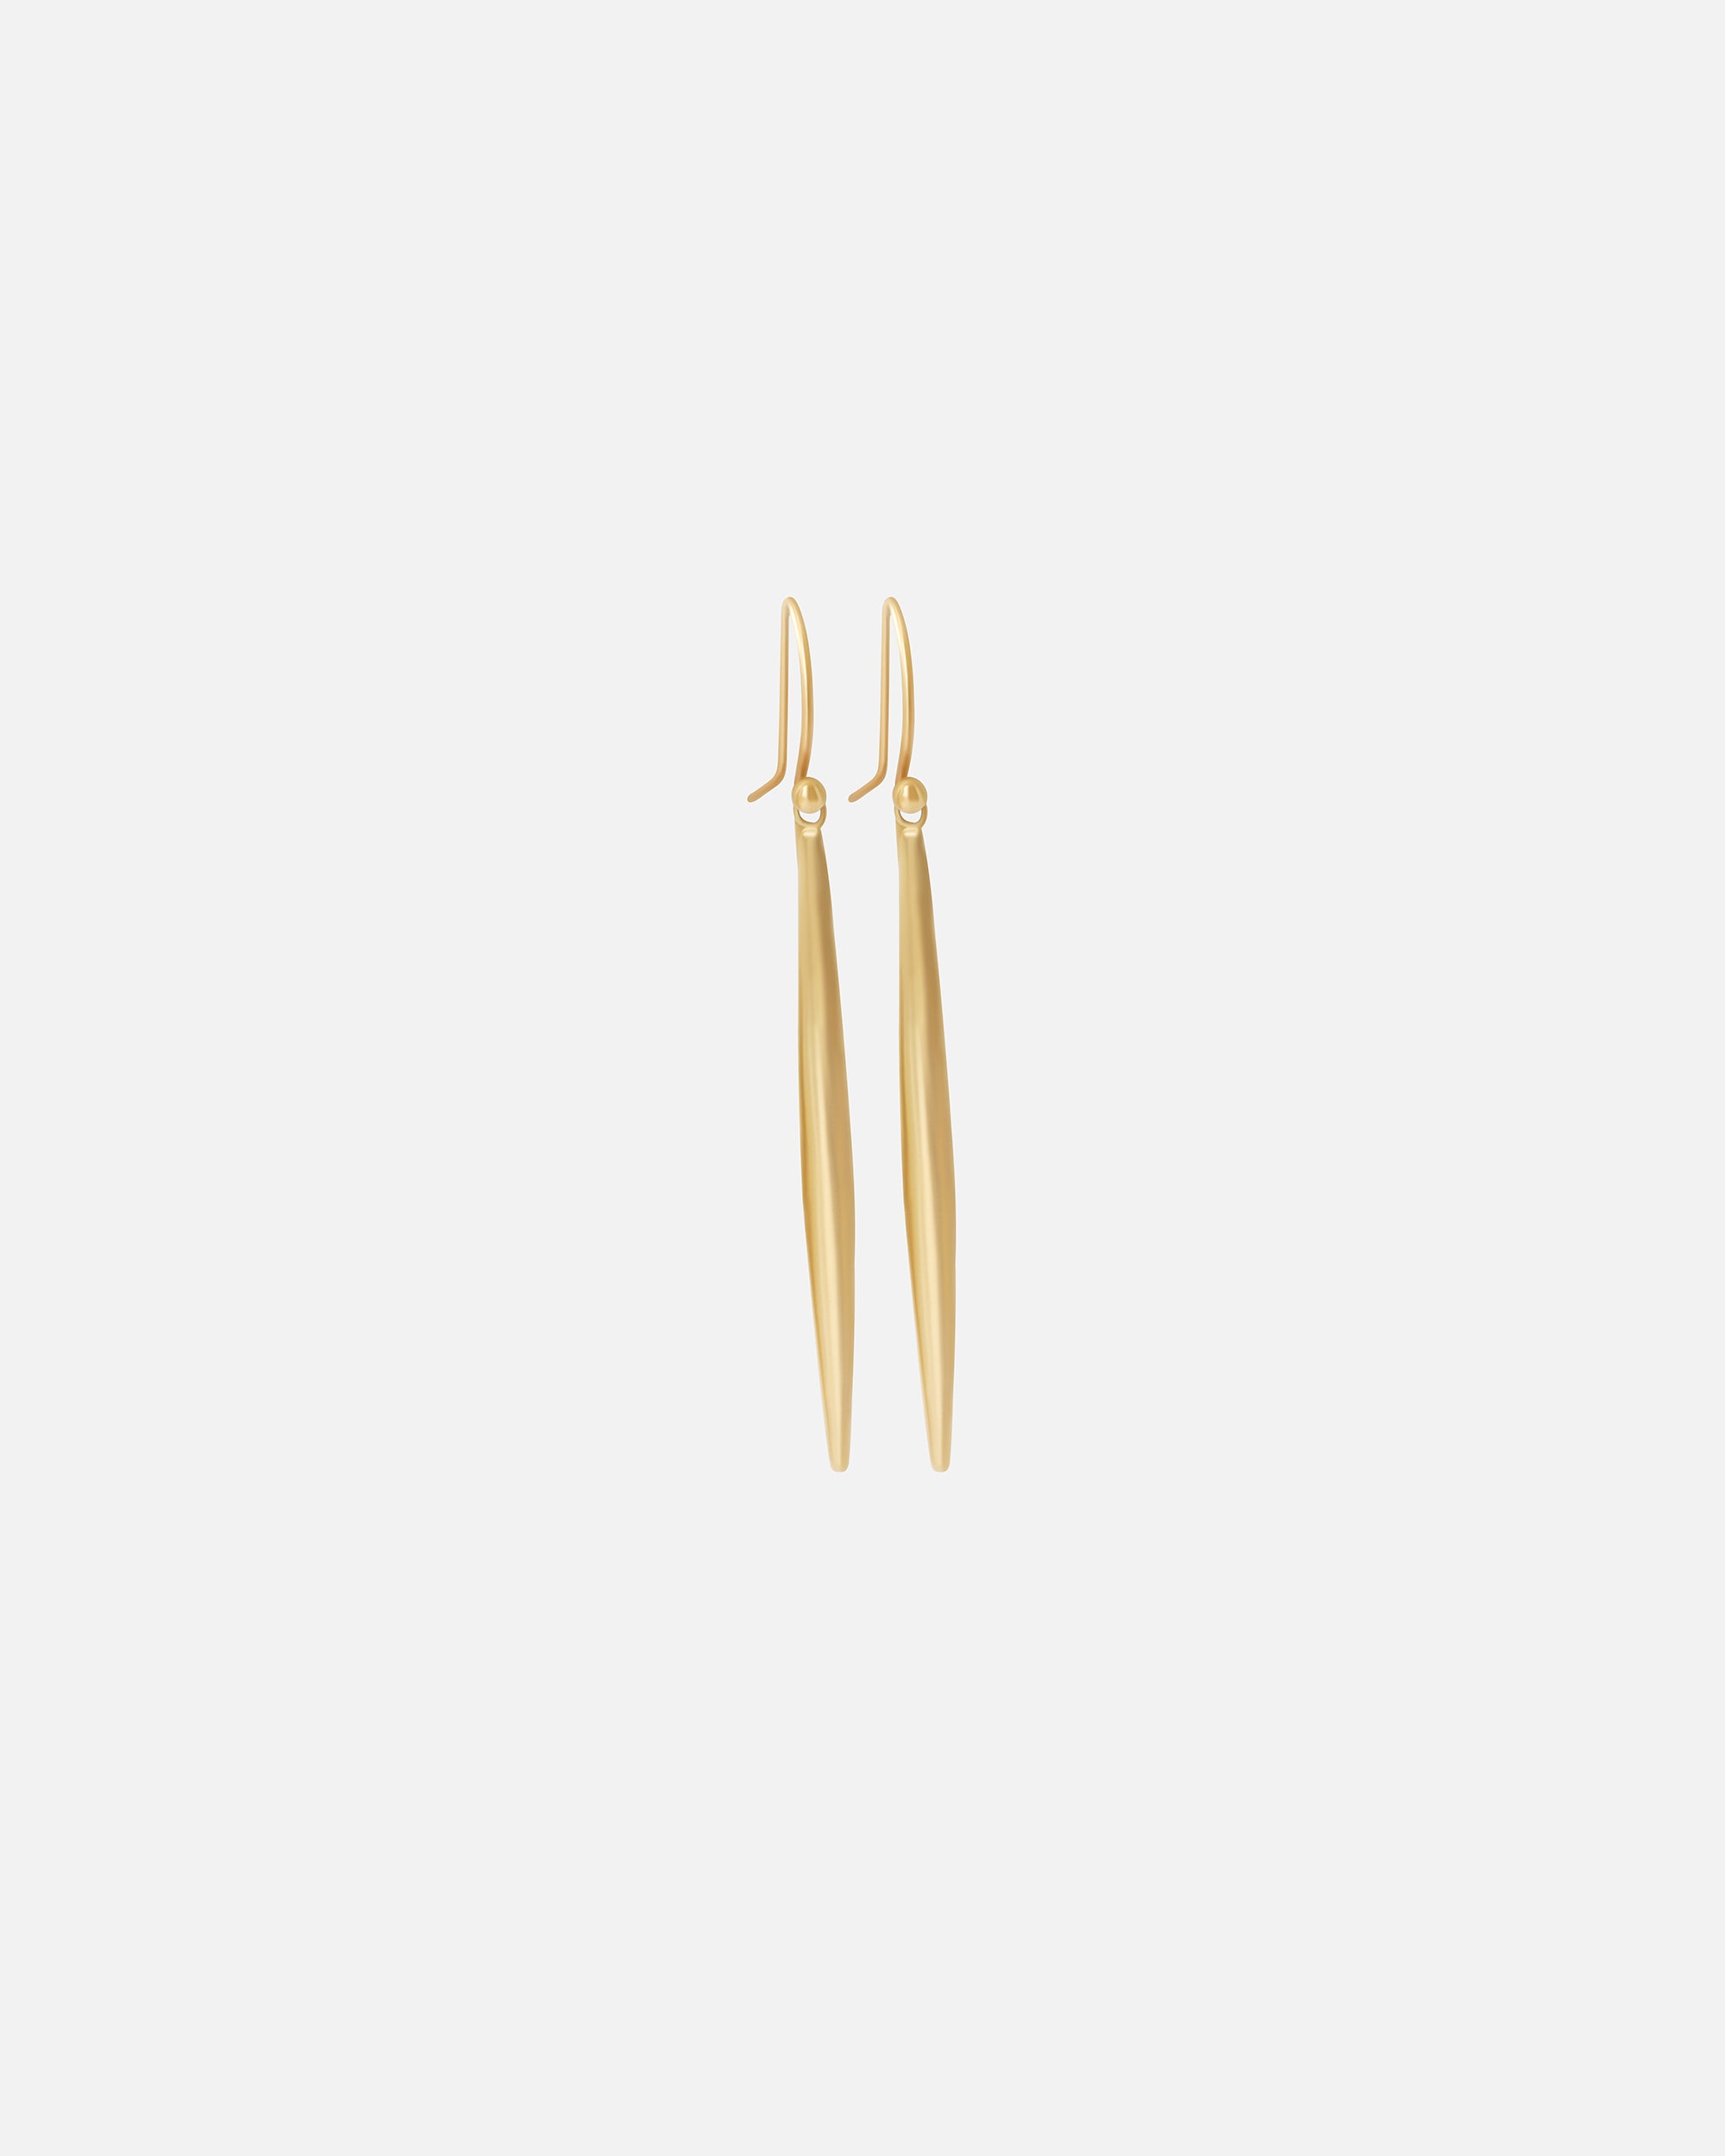 Skinny Surf / Earrings By Tricia Kirkland in earrings Category